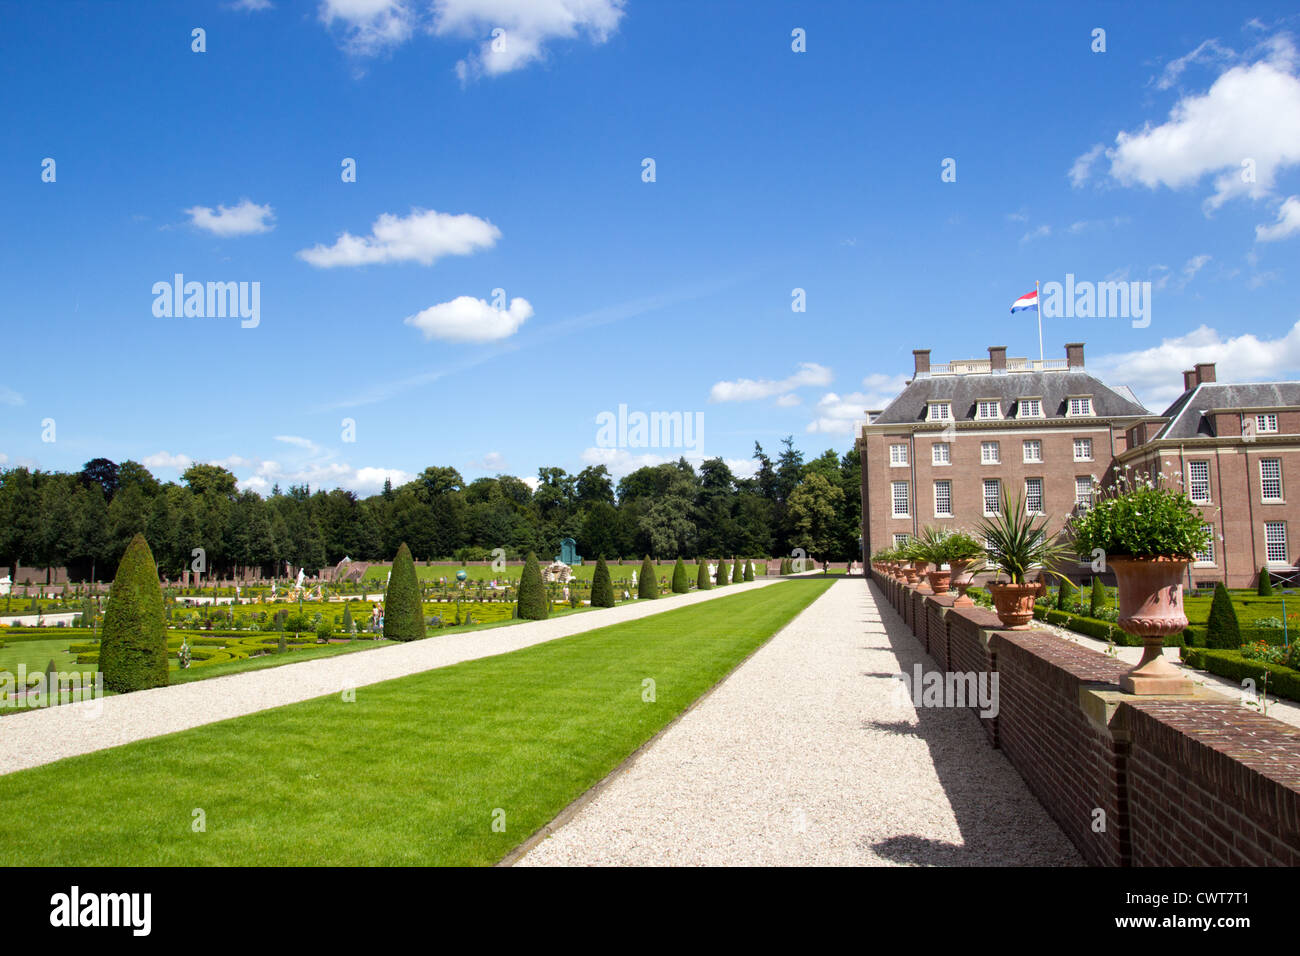 Palast "Het Loo" in Apeldoorn, Niederlande Stockfoto